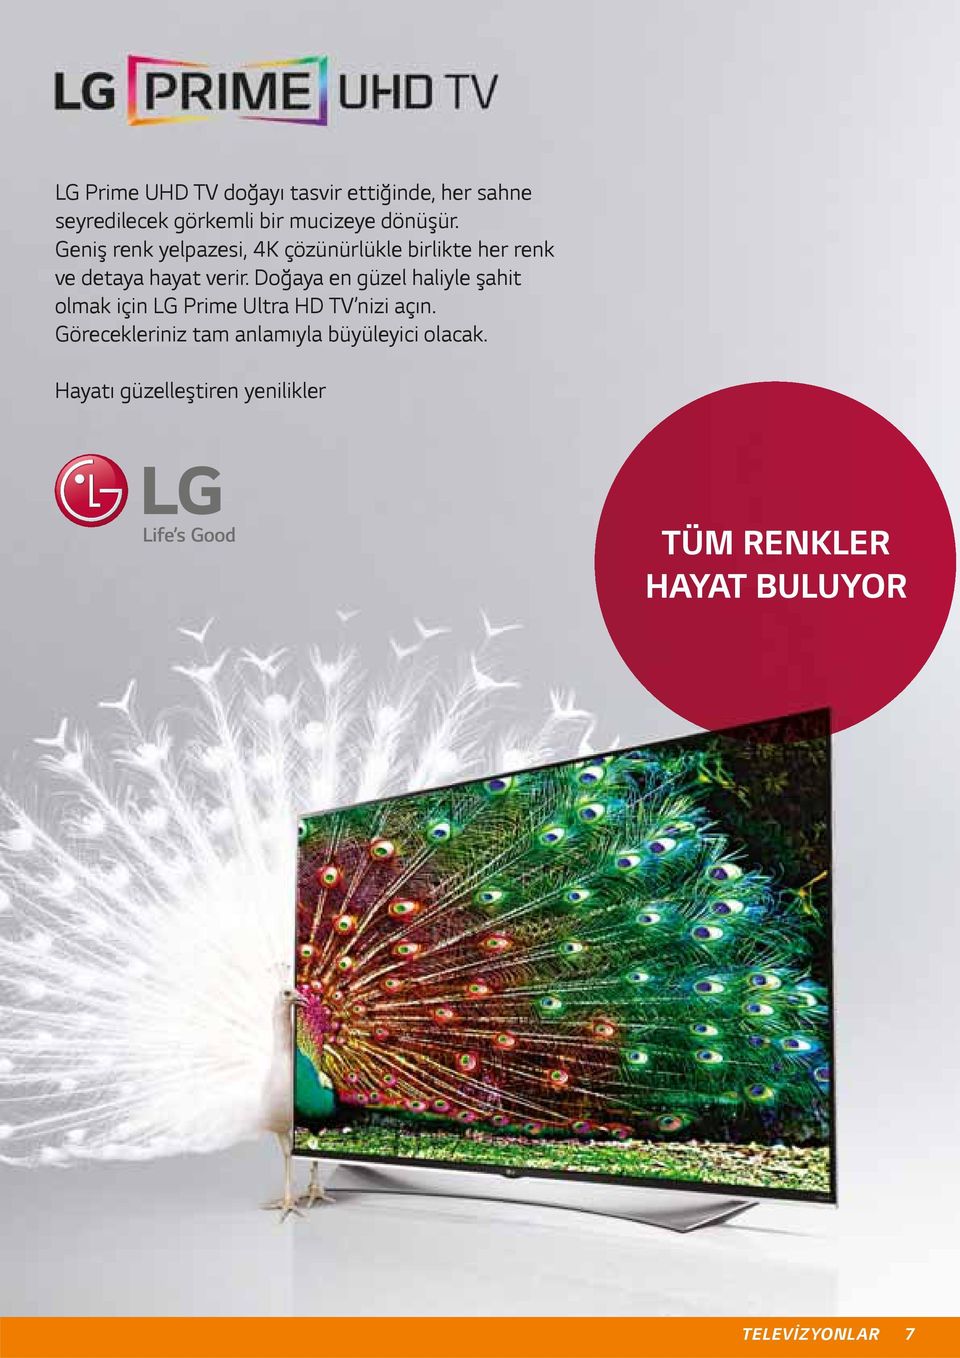 Doğaya en güzel haliyle şahit olmak için LG Prime Ultra HD TV nizi açın.